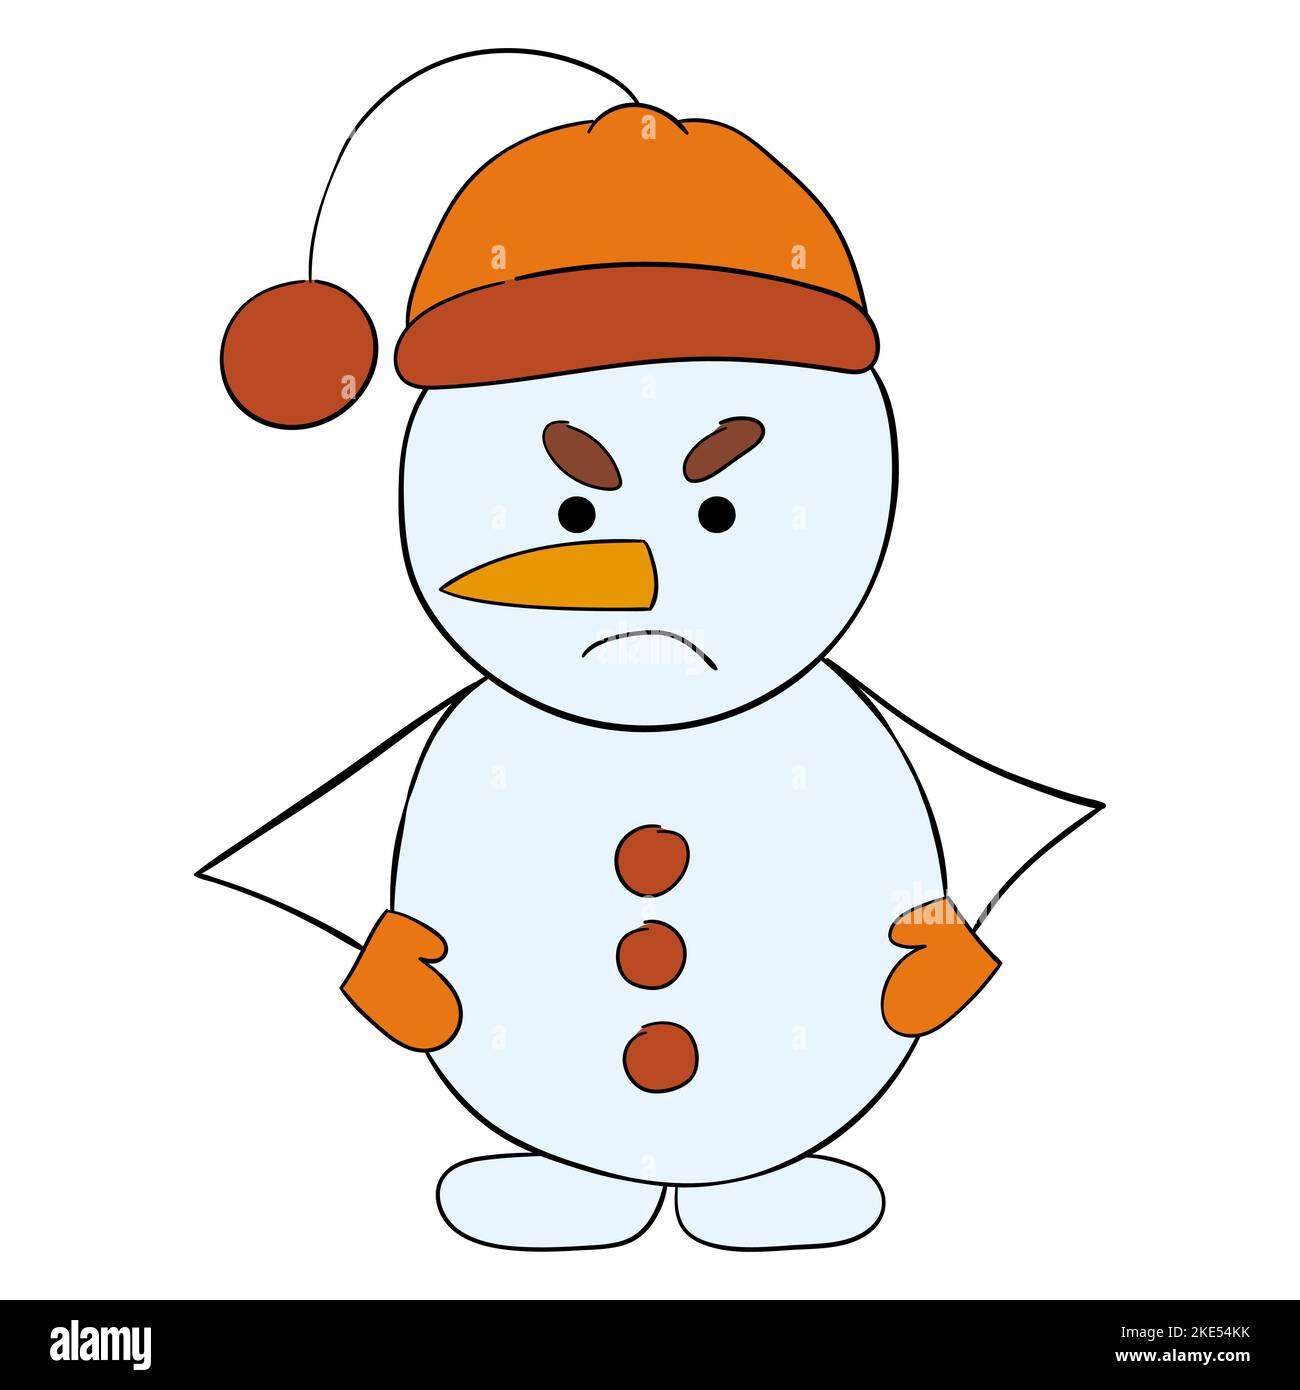 Cute cartoon angry snowman. Vector illustration. Stock Vector